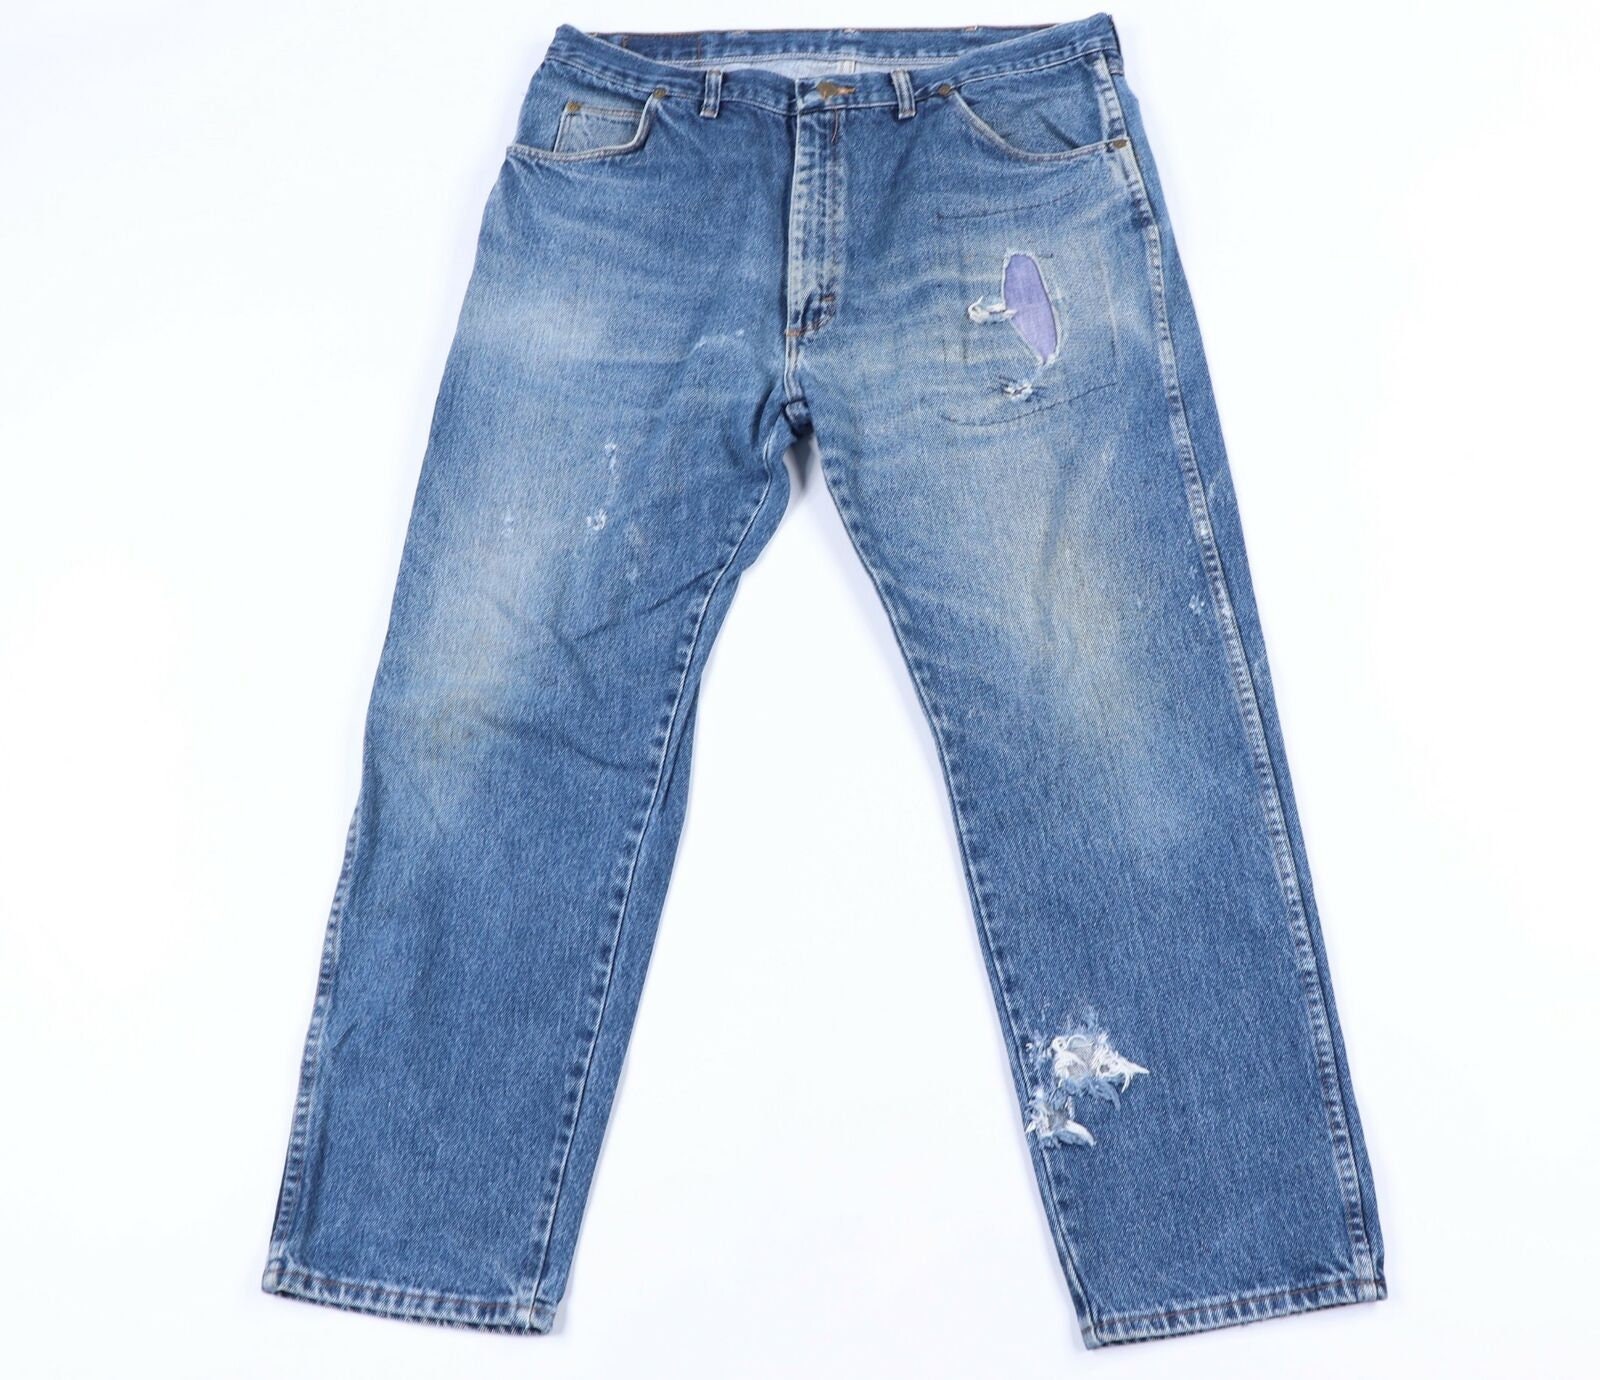 90s Wrangler Jeans - Etsy